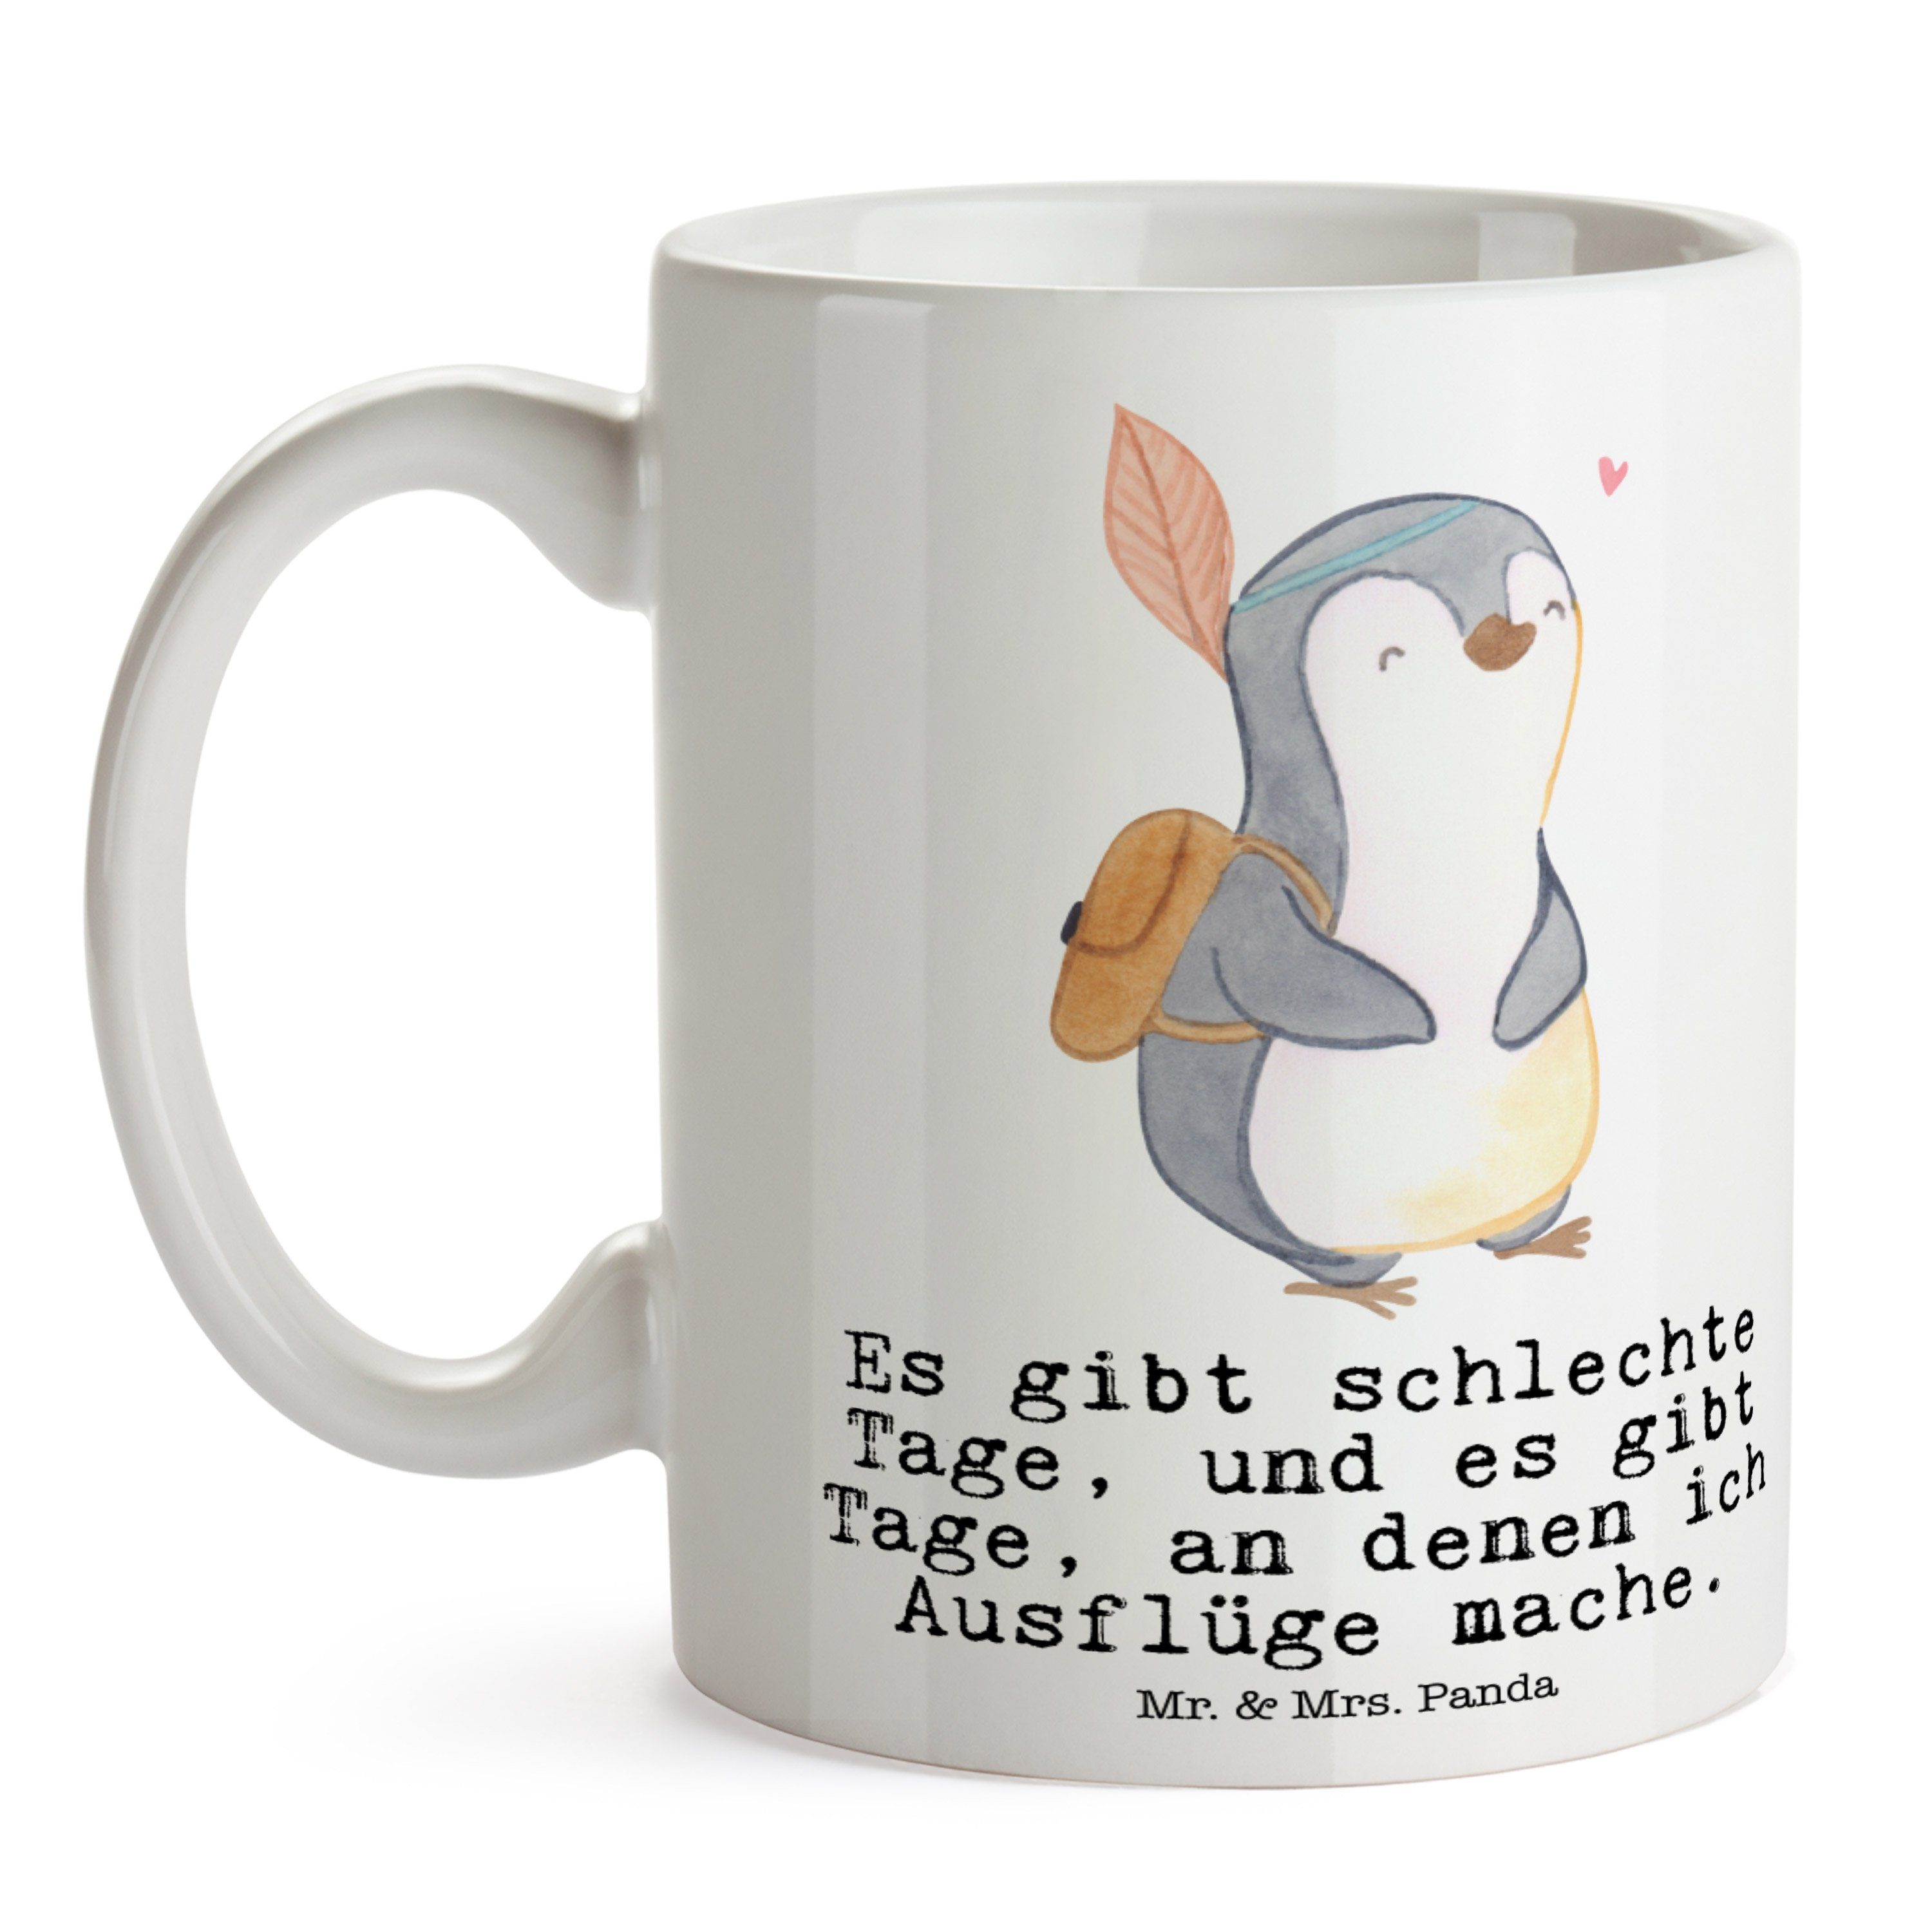 Mr. & Mrs. Panda Weiß Tasse Schenken, Ausflüge Geschenk, Pinguin Keramik machen, - Ta, Tage Ausflug 